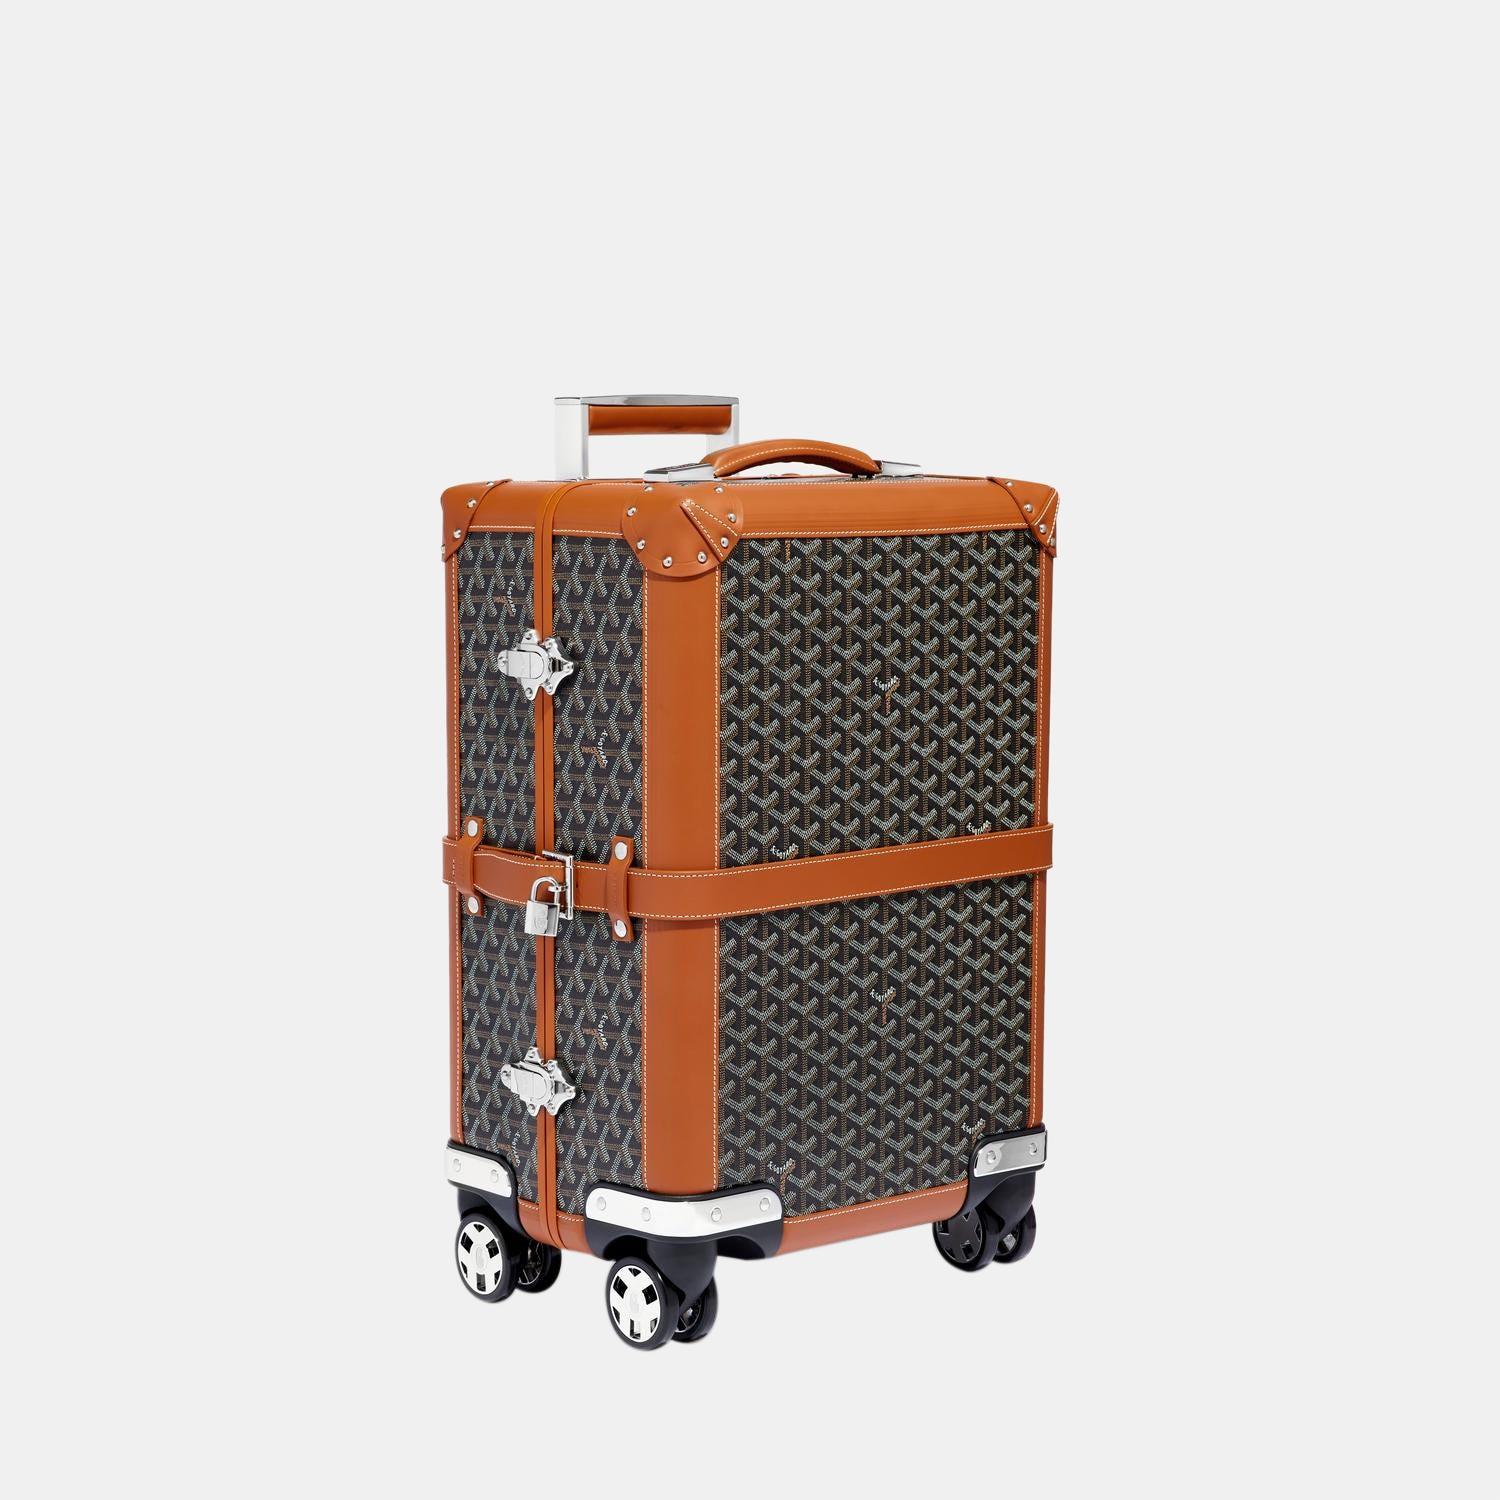 Élevez votre style avec cette valise trolley noire et beige de Goyard. Alliant forme et fonction, cet accessoire exquis incarne la sophistication et vous permet de vous démarquer avec élégance et praticité à vos côtés.

